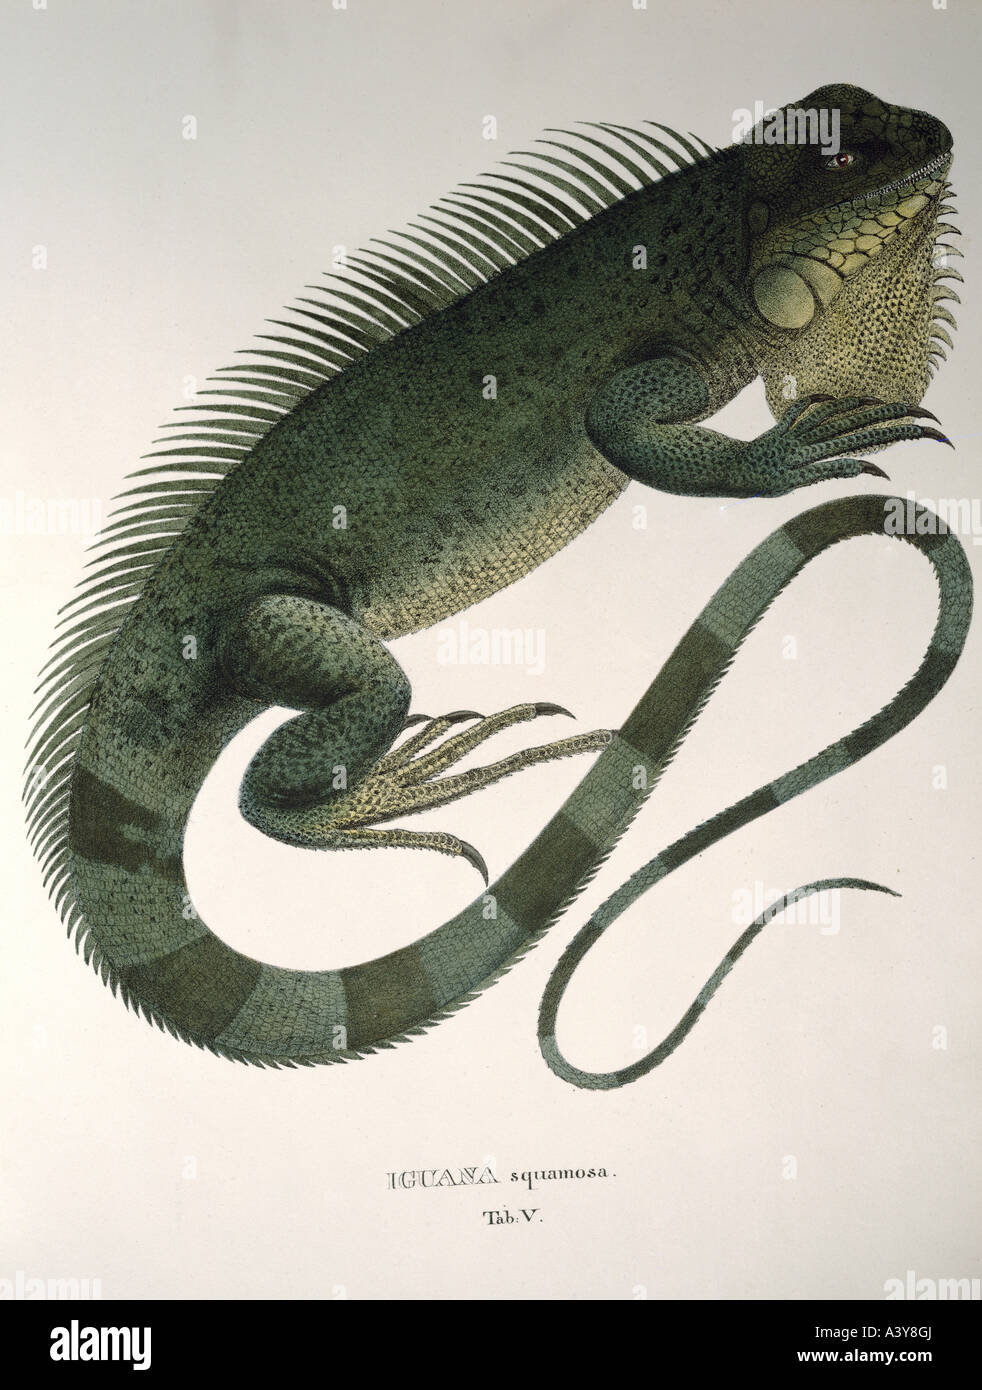 Zoologie/Tier, Reptilien, Iguaniden, Iguana squamosa, Farblithograph, von Johann Baptisten von Spix, von "Animalia Nova sive Species novae lacertorum", München, Deutschland, um 18325, Stockfoto